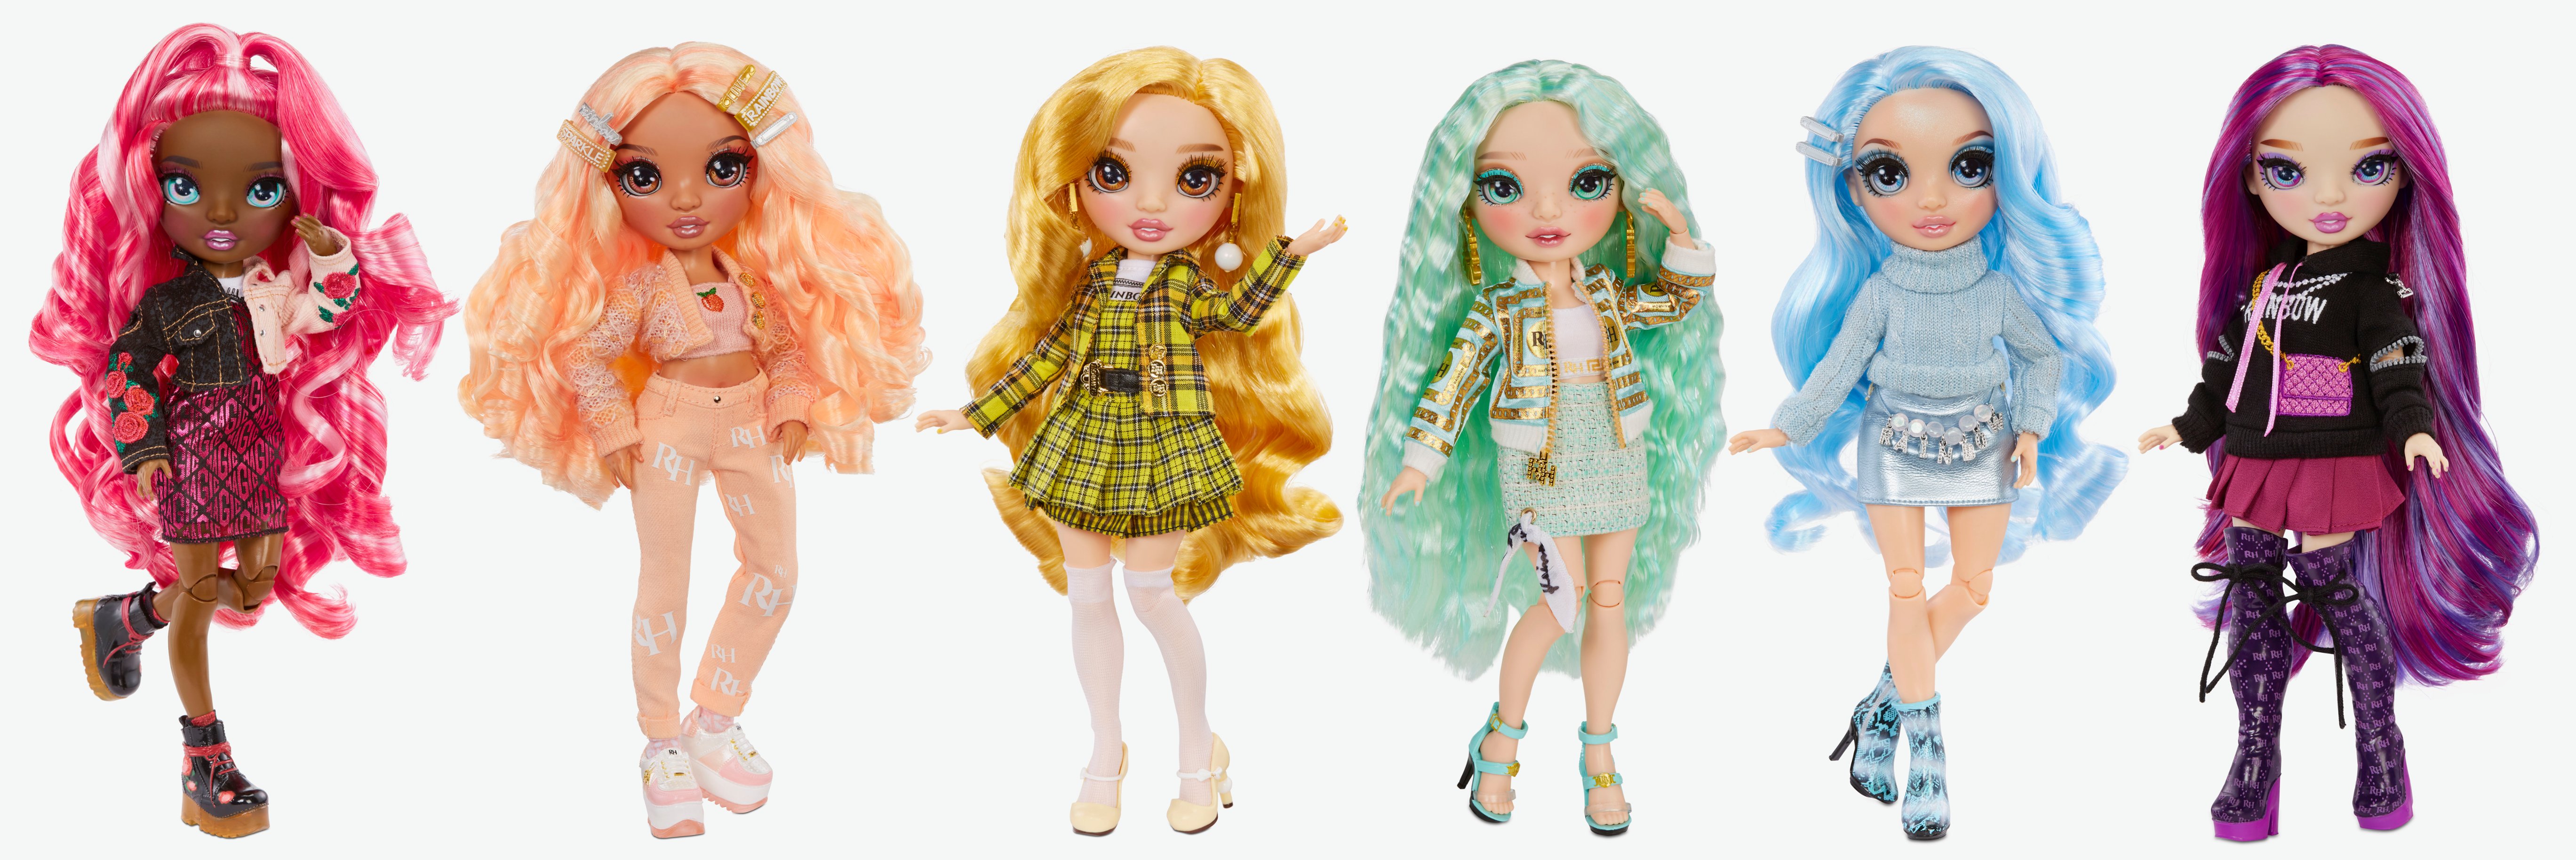 Best Buy: Rainbow High Fashion Doll- Georgia Bloom (Peach) 575740